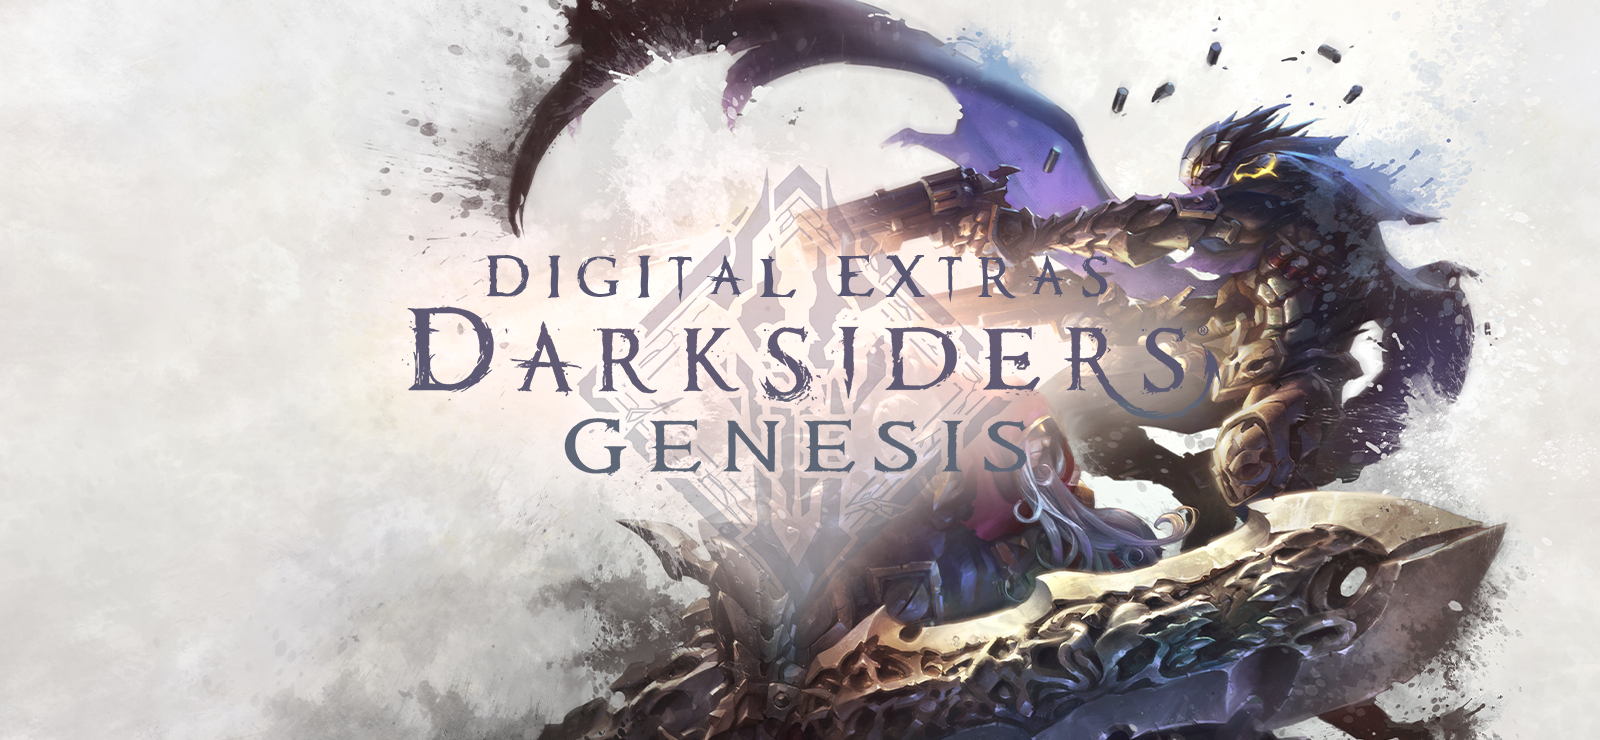 Darksiders Genesis Digital Extras